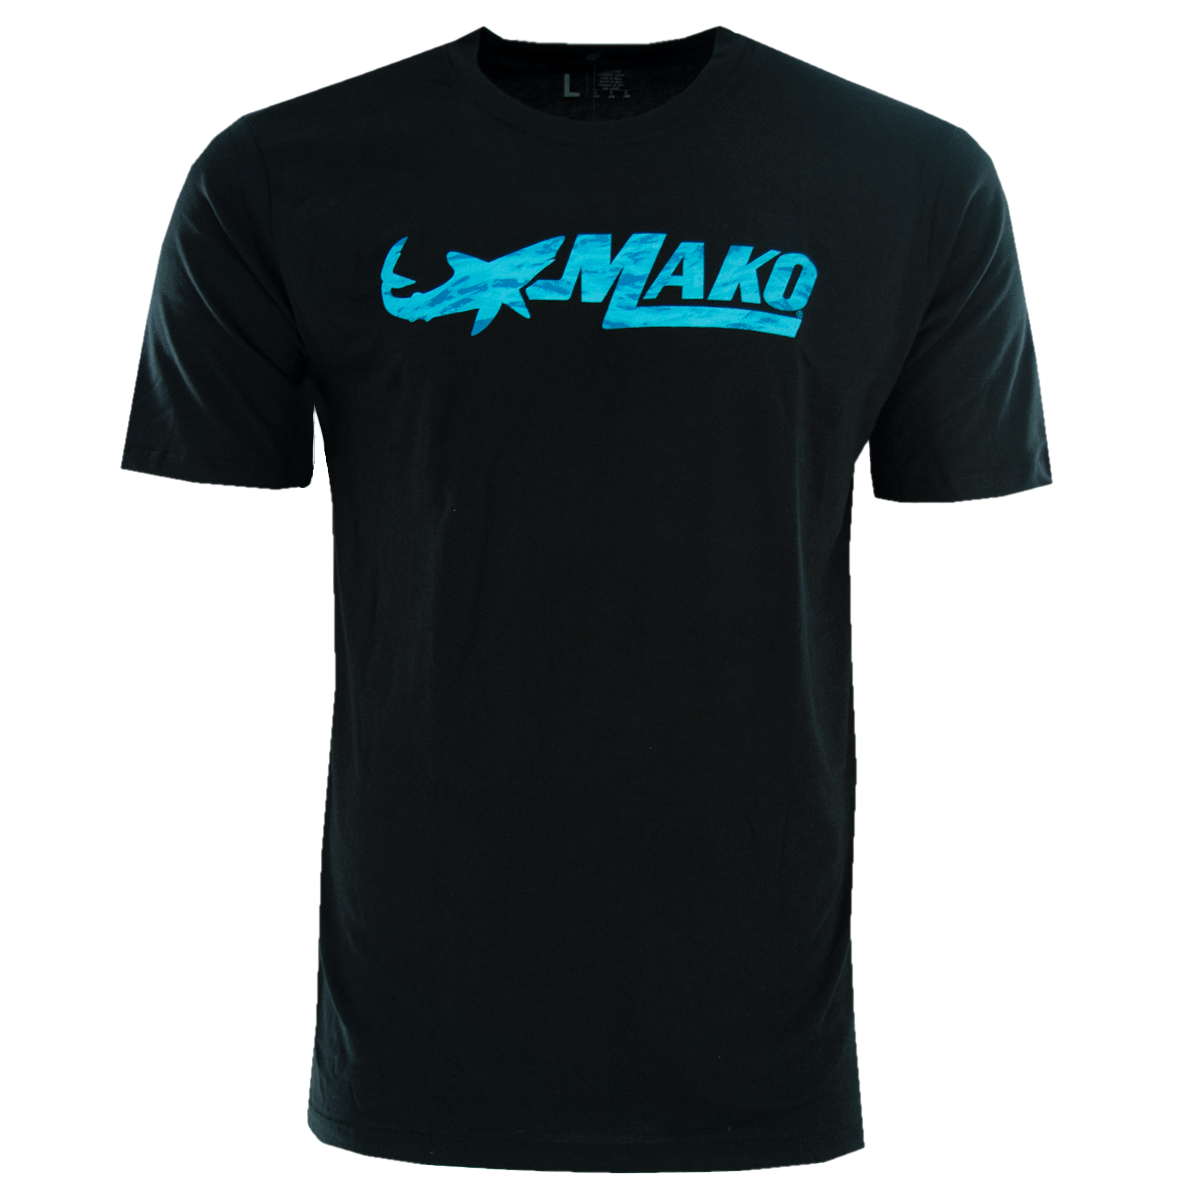 Mako Essential Short-Sleeve T-Shirt for Men - Black - S